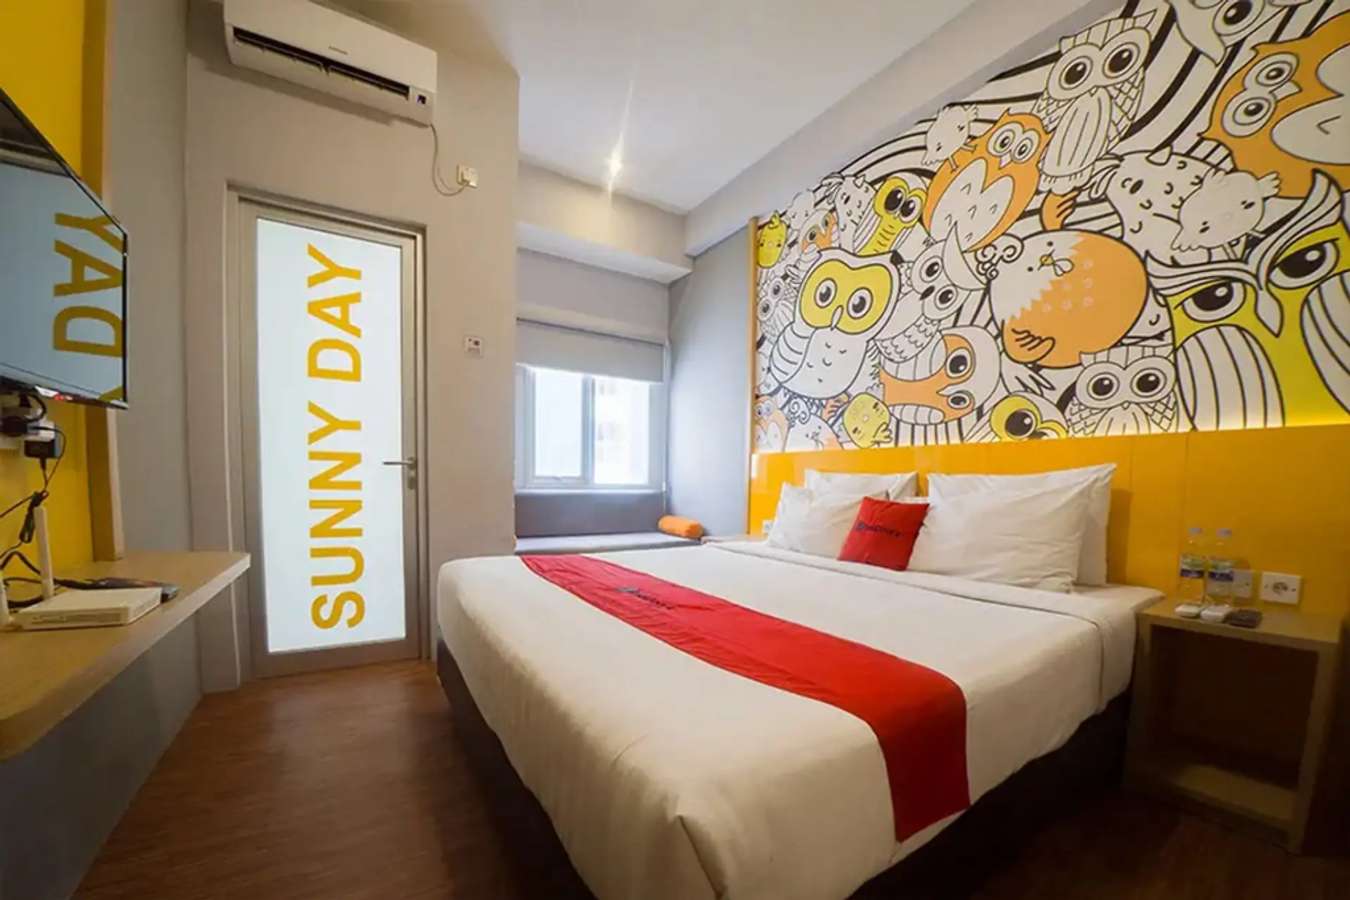 Bedroom - RedDoorz Apartment near Bundaran Satelit Surabaya 2